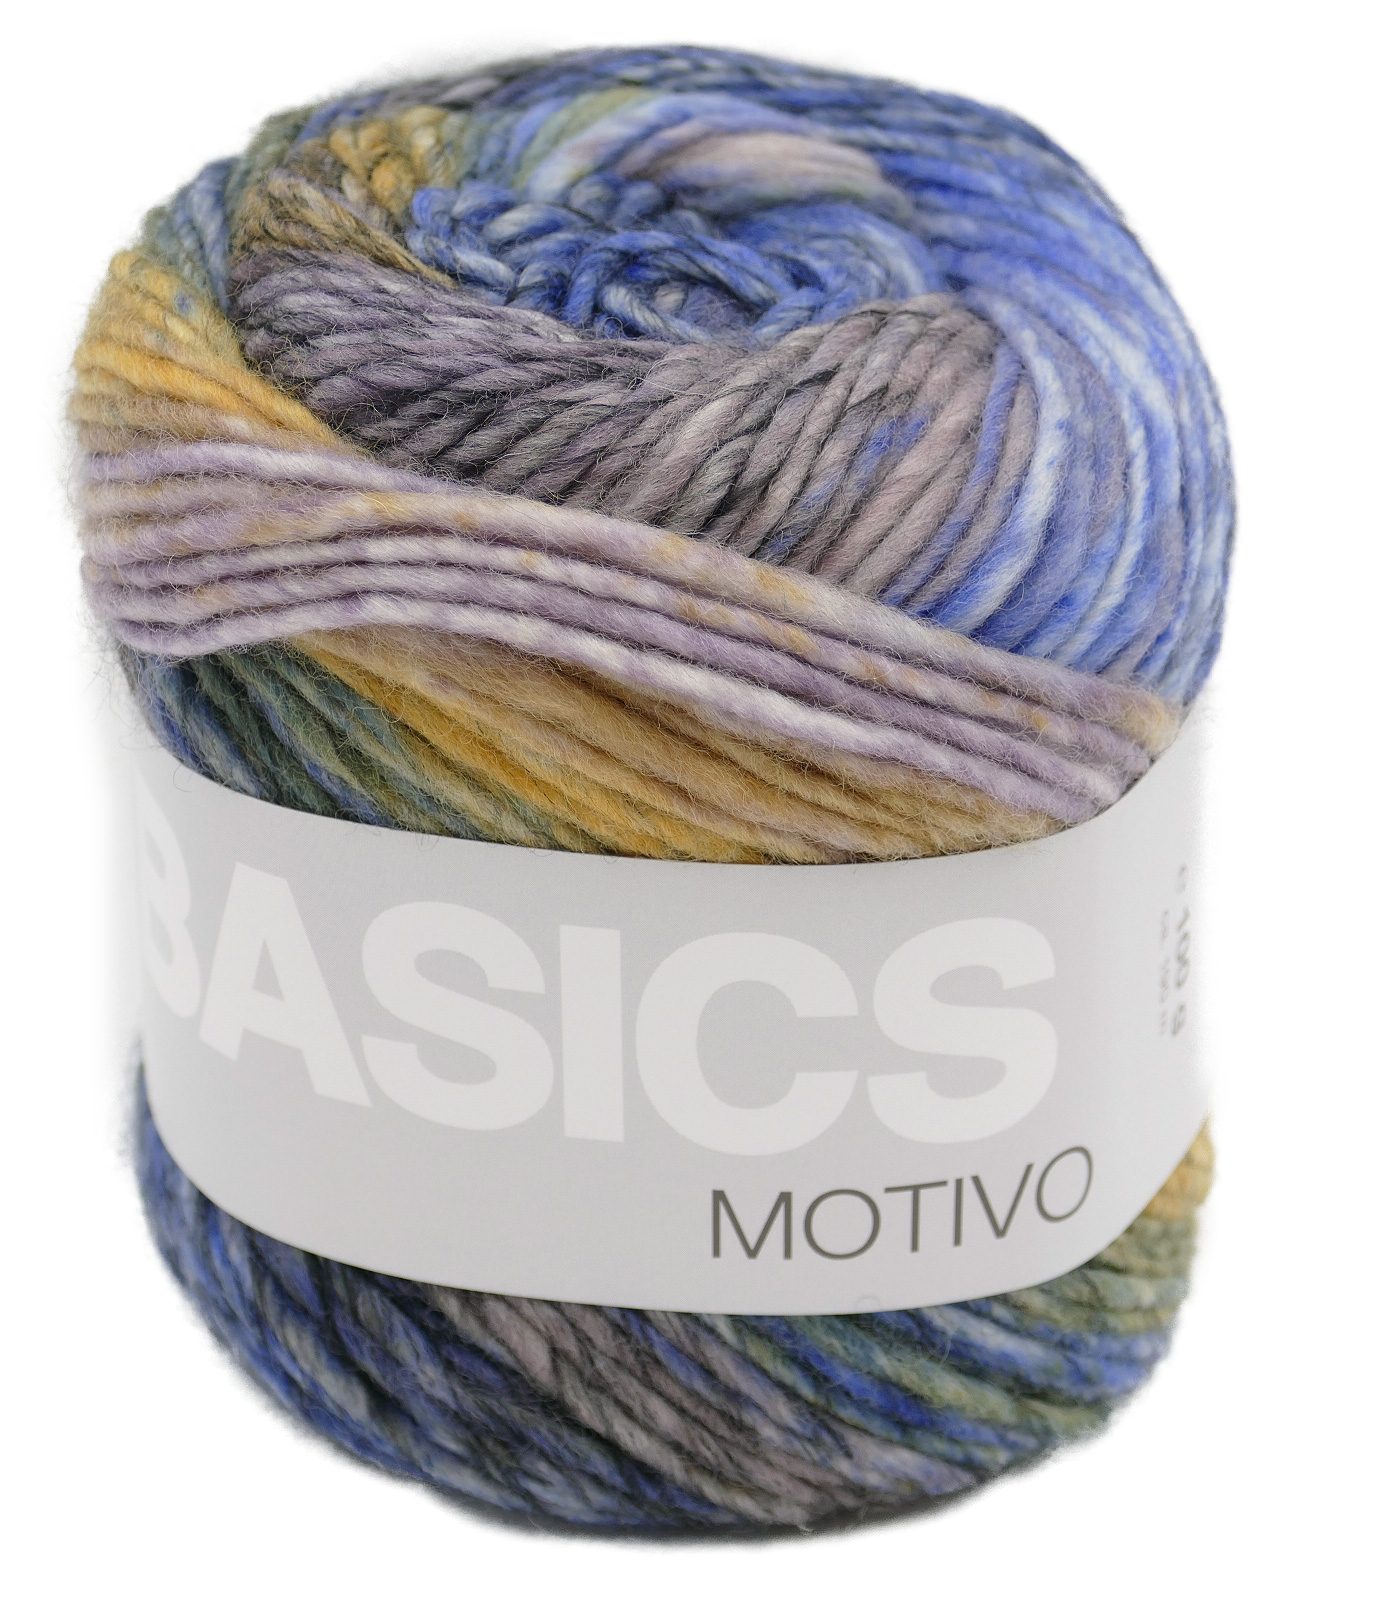 LANA GROSSA Basics Motivo Farbverlaufswolle zum stricken und häkeln Häkelwolle, 190,00 m (Wolle mit Farbverlauf, 100g, Strickgarn, Strickwolle, Handstrickgarn), 85% Wolle, 15% Polyacryl